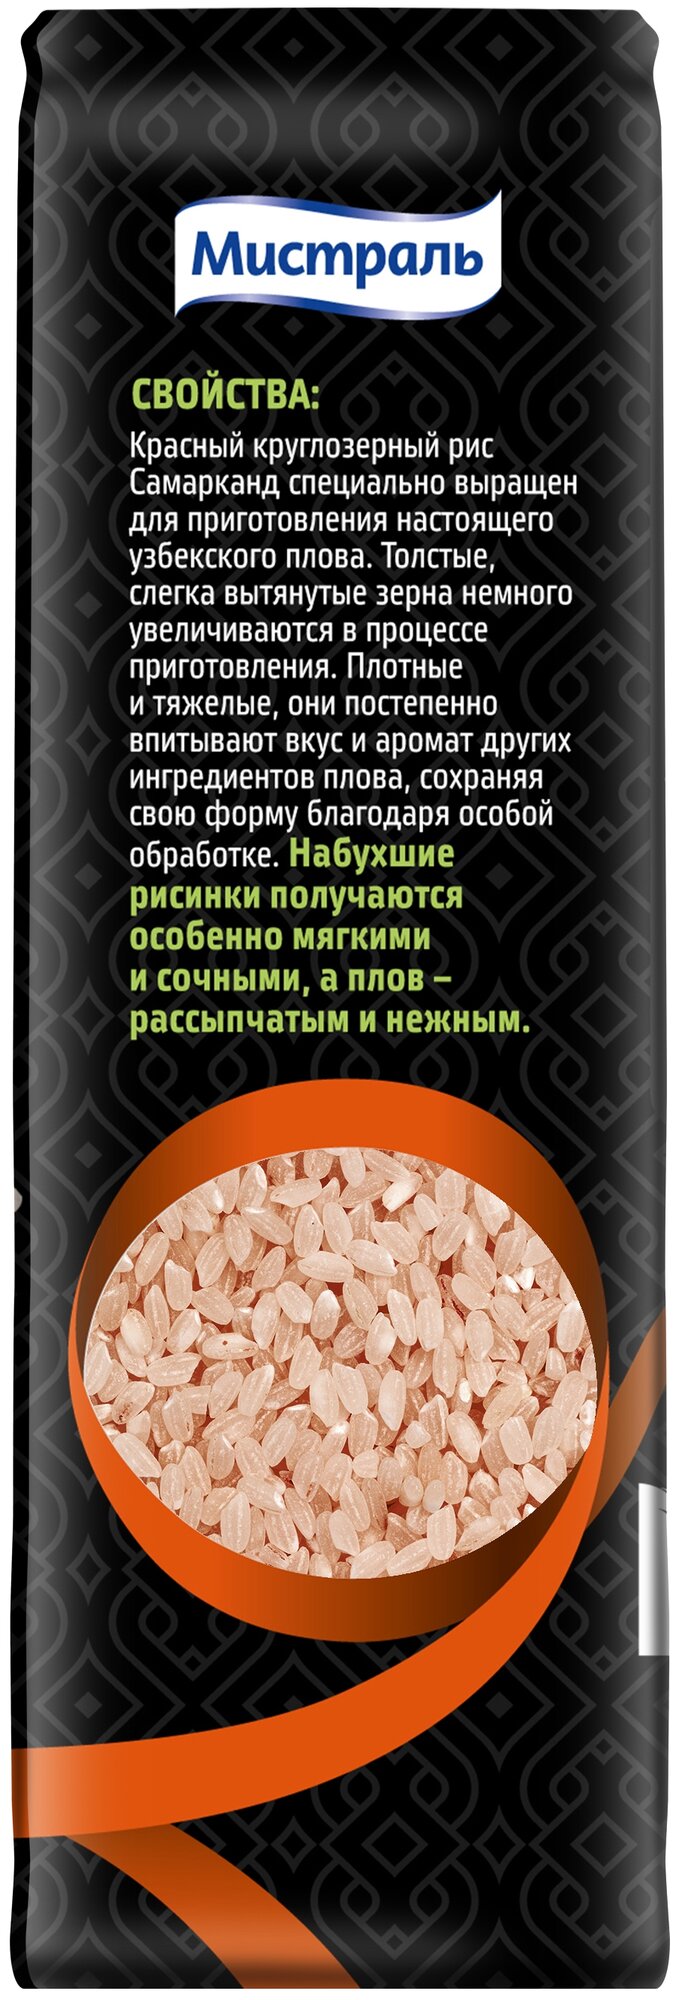 Рис Мистраль Самарканд для плова по-узбекски красный круглозерный шлифованный, 500 г